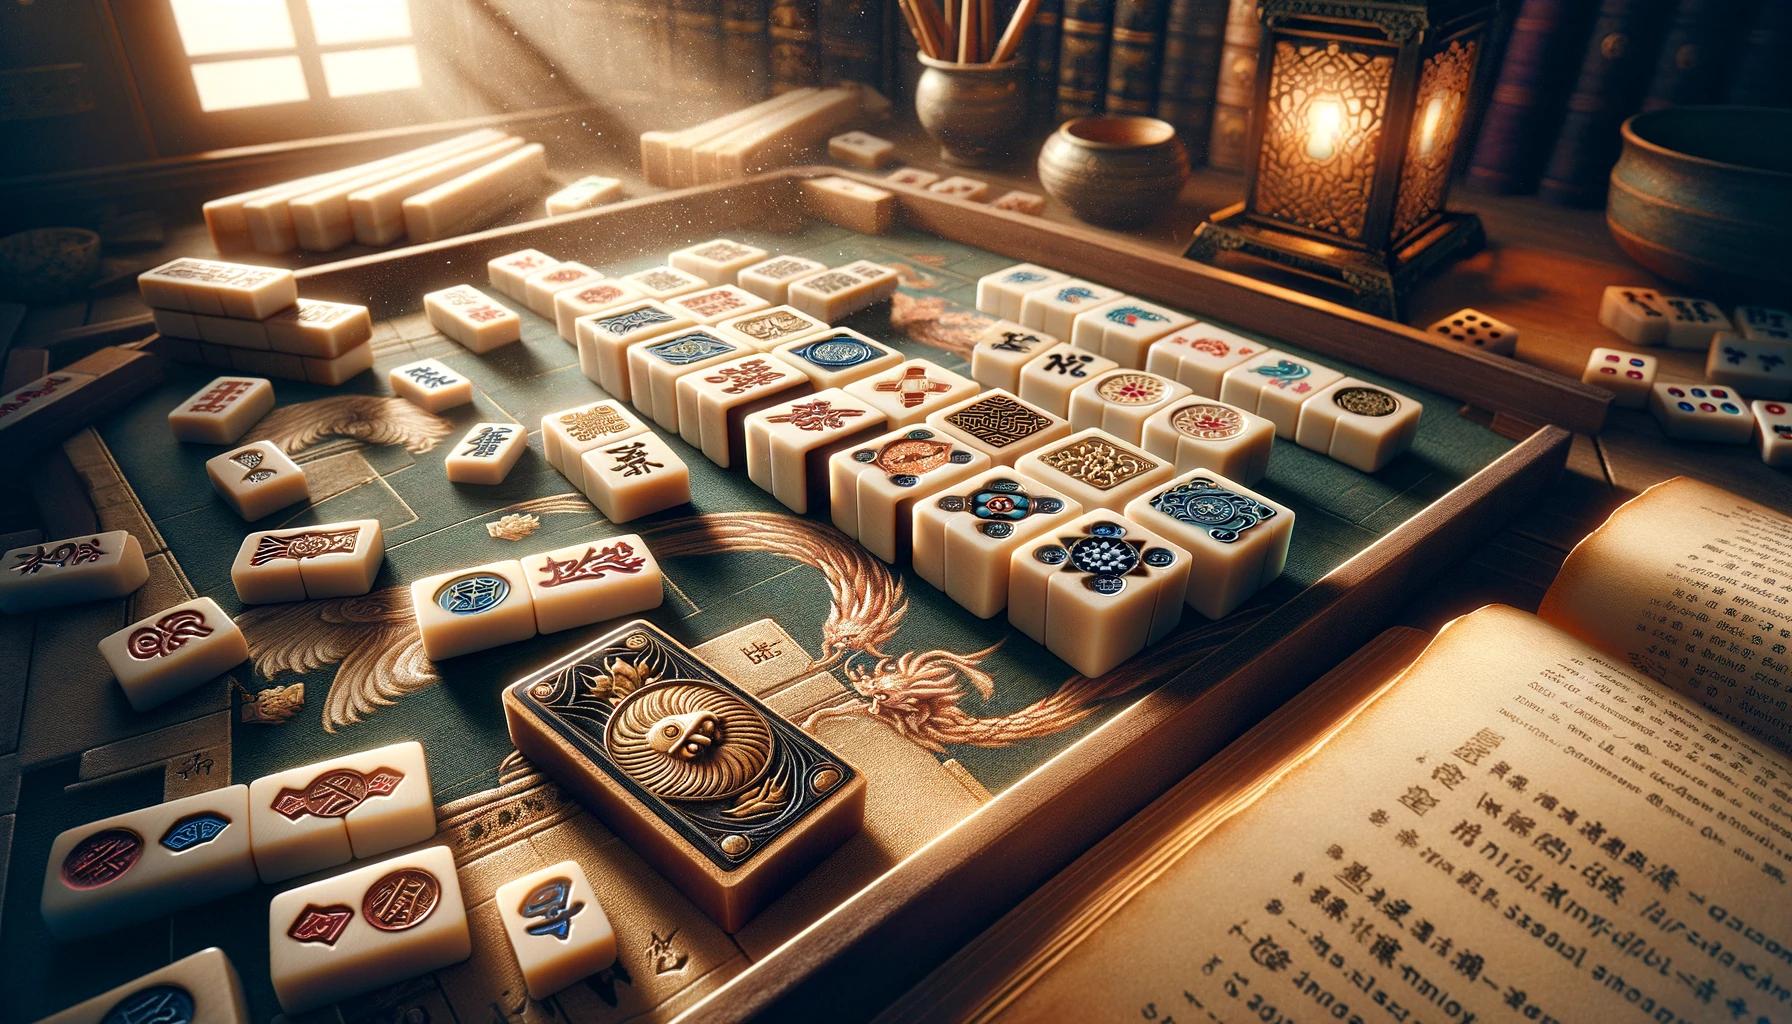 Allt om Mahjong: Uppdateringar, Evenemang, Guider, Tips och Intressanta Fakta.